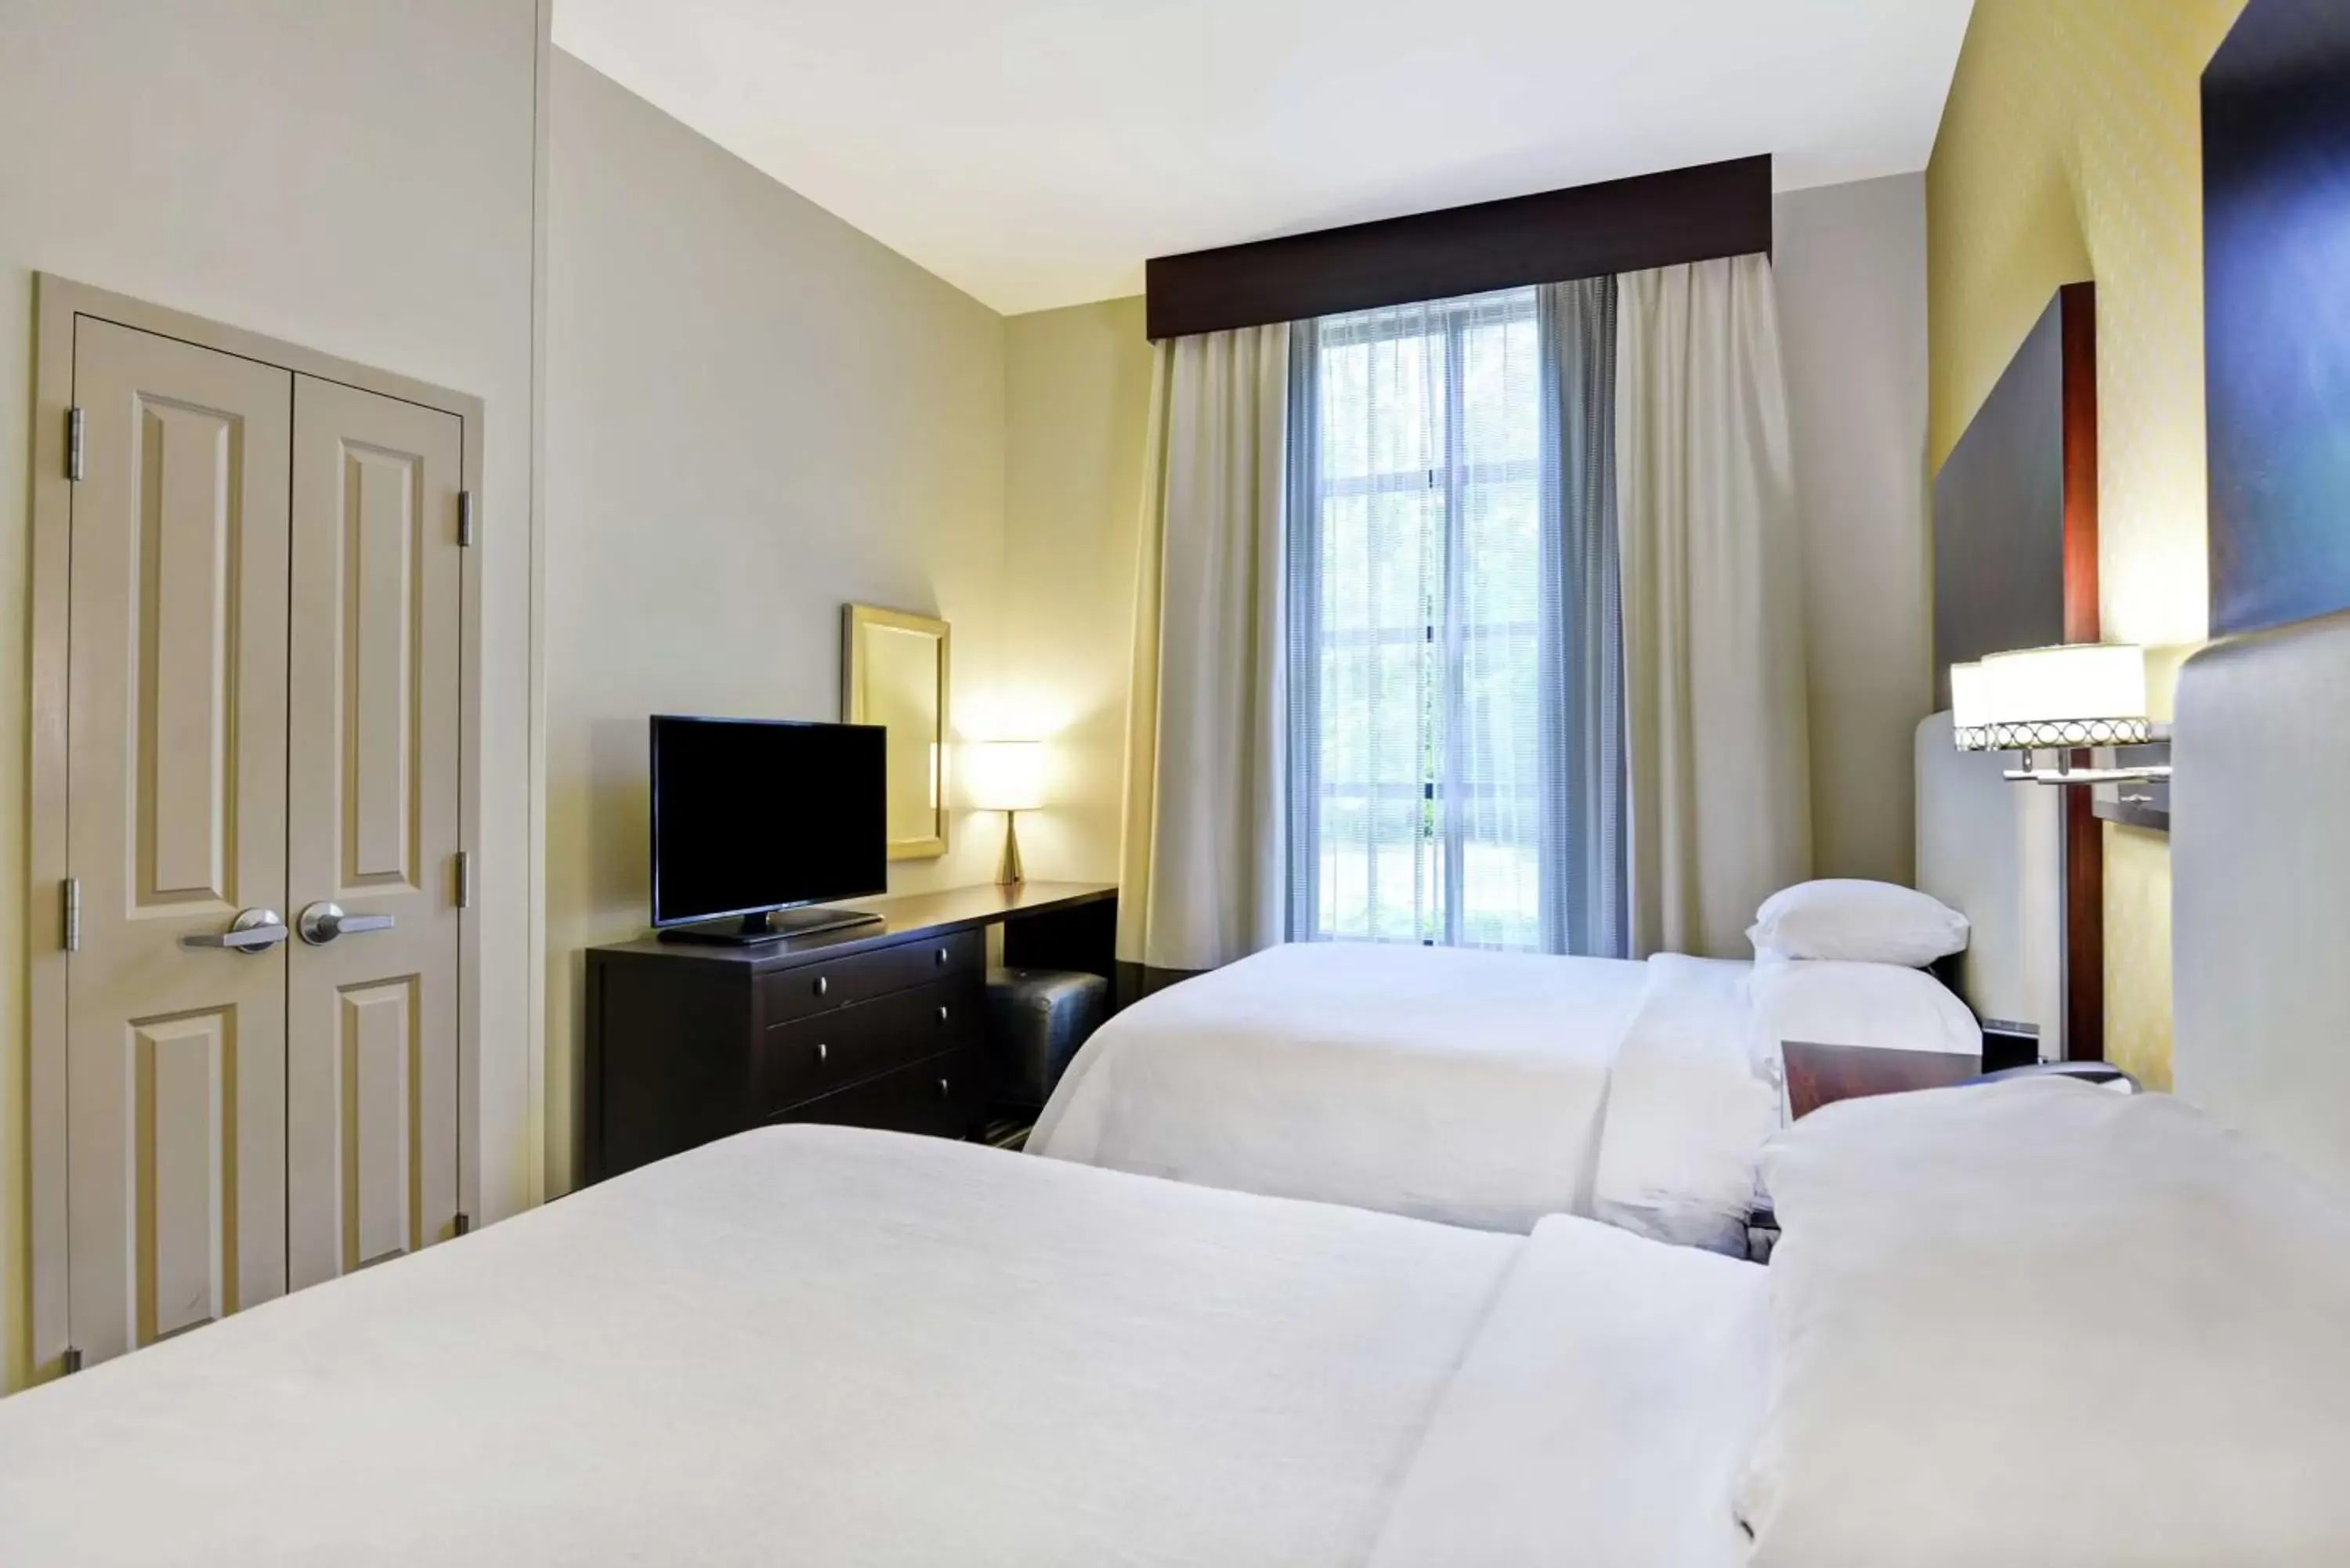 Bedroom, Bed in Embassy Suites Savannah Airport